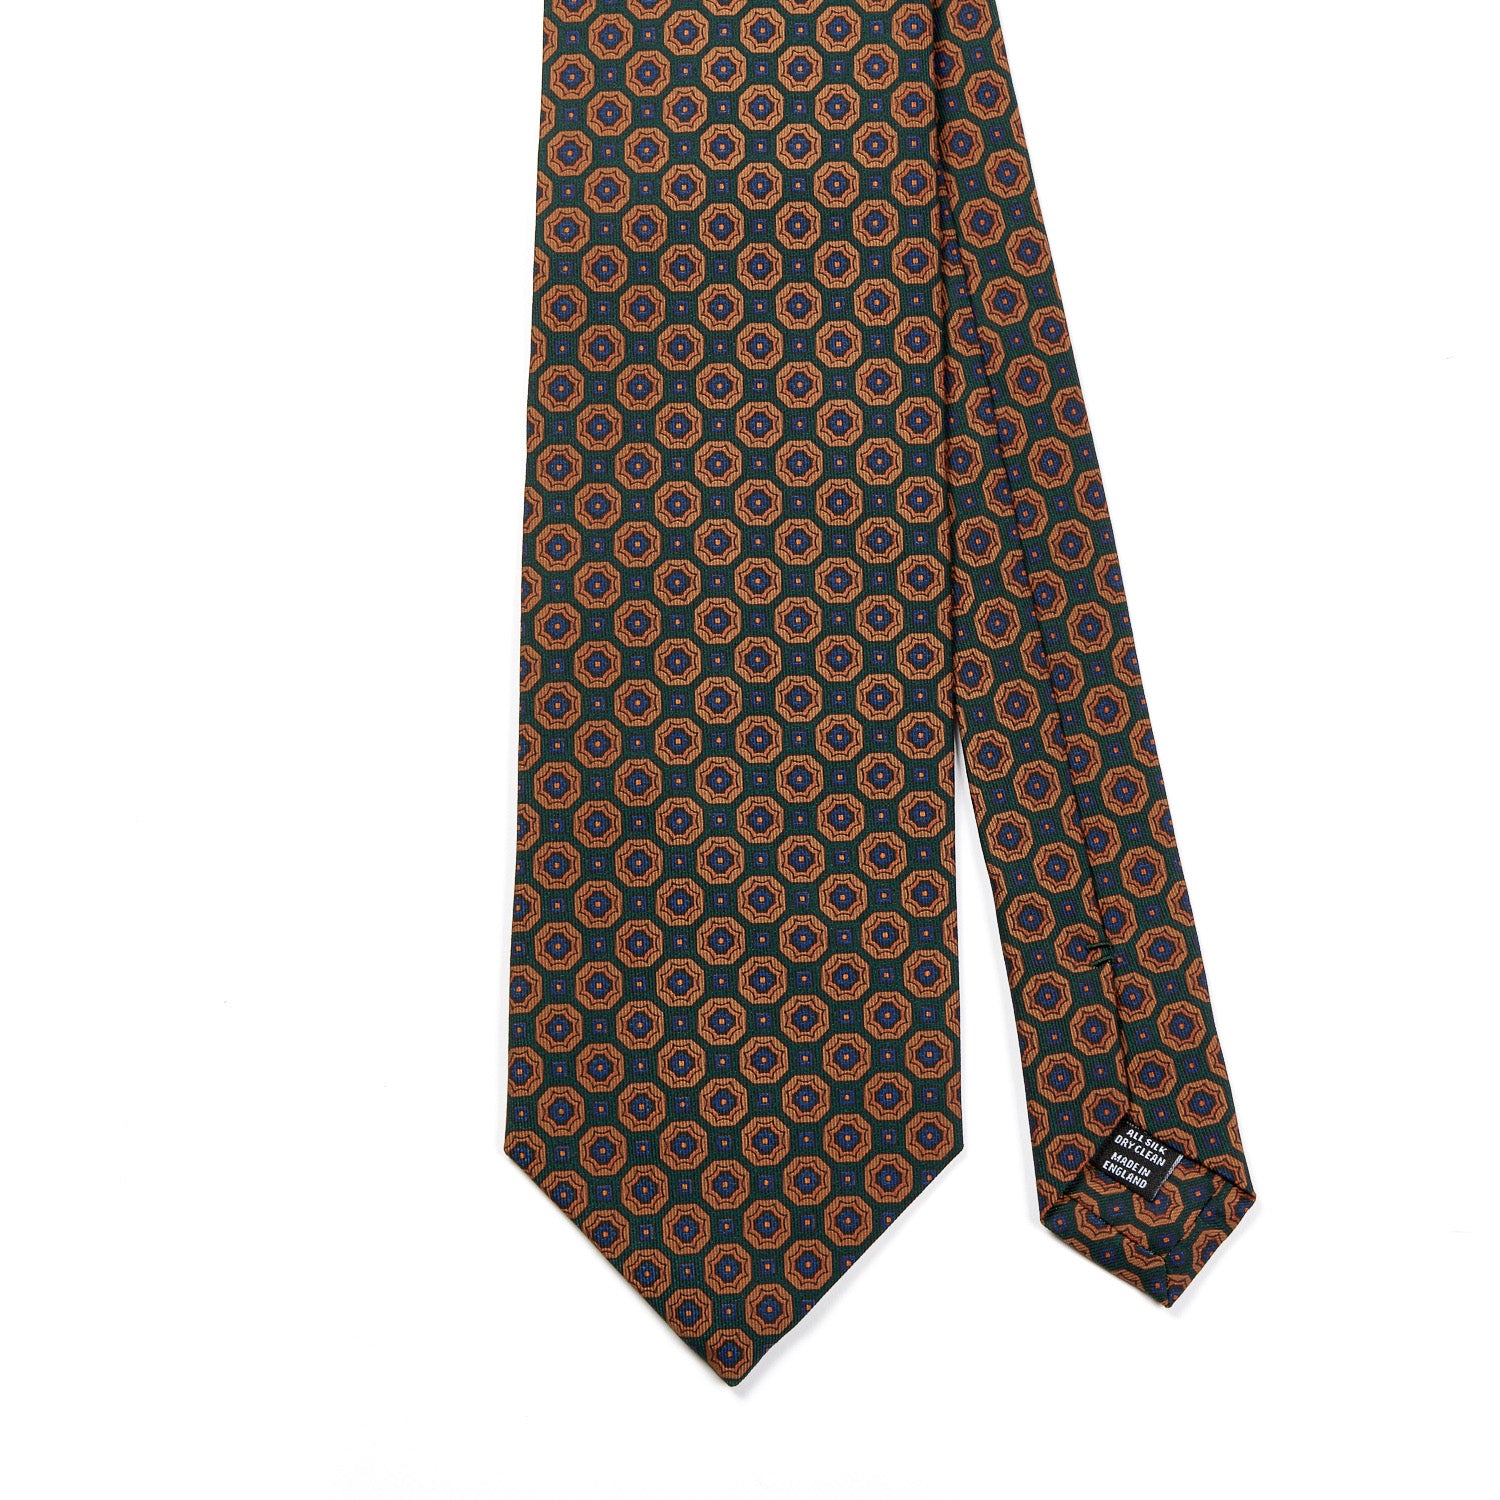 Louis Vuitton Monogram 100% Silk Tie Necktie Dark Green Brown Flower Pattern